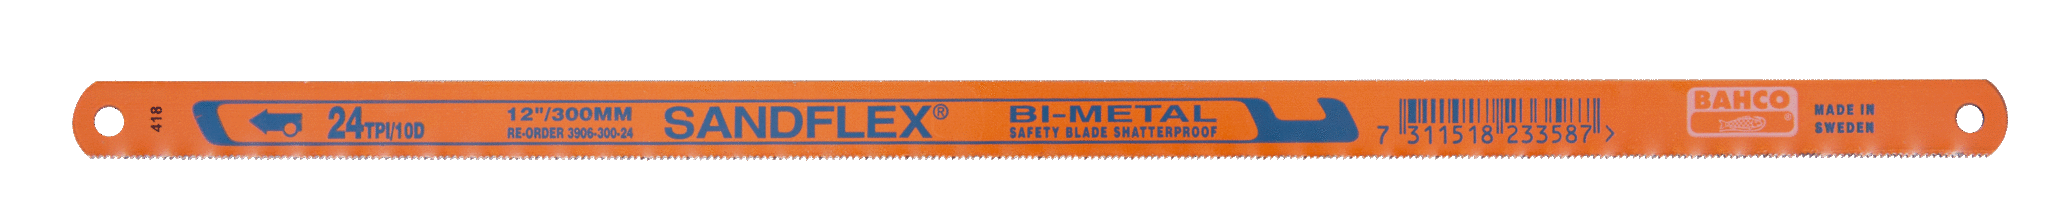 Биметаллические ножовочные полотна SANDFLEX®. Новое биметаллическое полотно SANDFLEX с повышеным содержанием кoбальта BAHCO 3906-300-18-5P